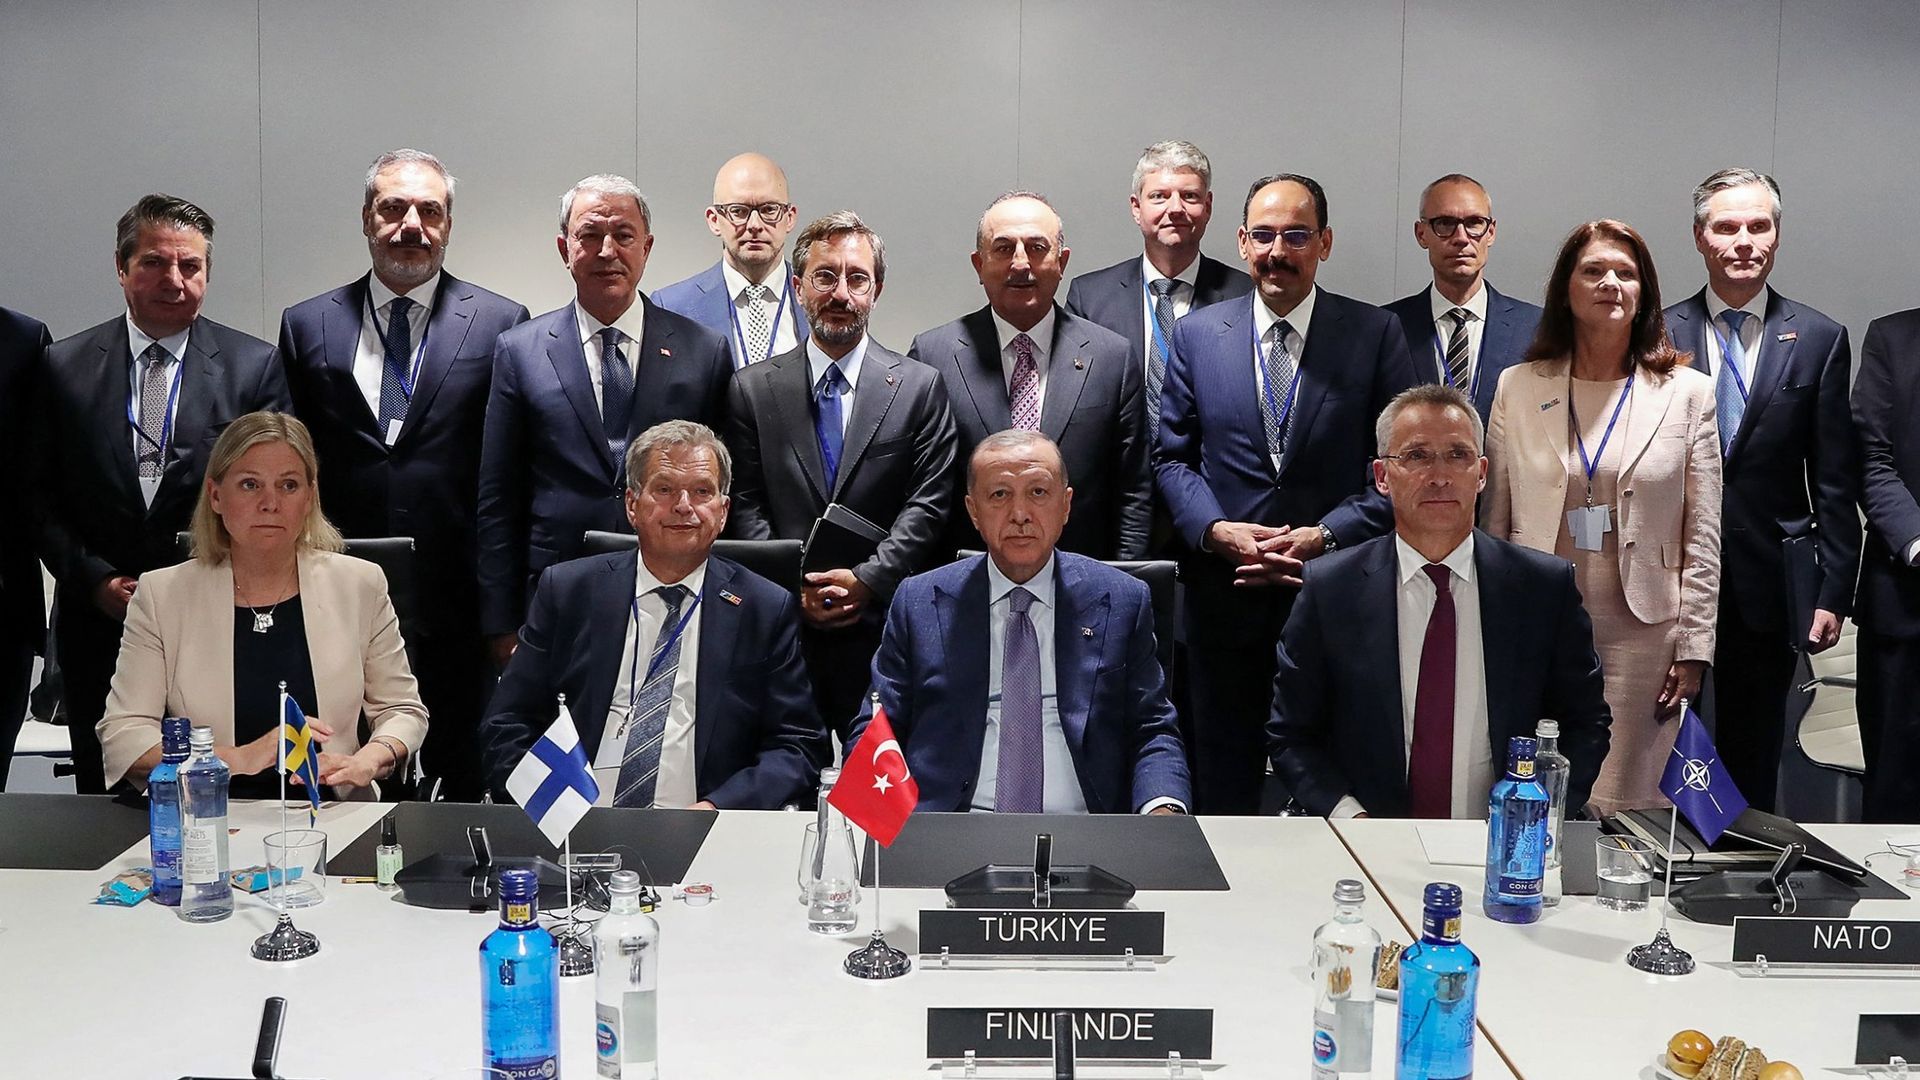 Les principaux dirigeants de la Suède, de la Finlande et de la Turquie se sont réunis hier soir pour arriver à un accord permettant de lancer l'adhésion à l'Otan.